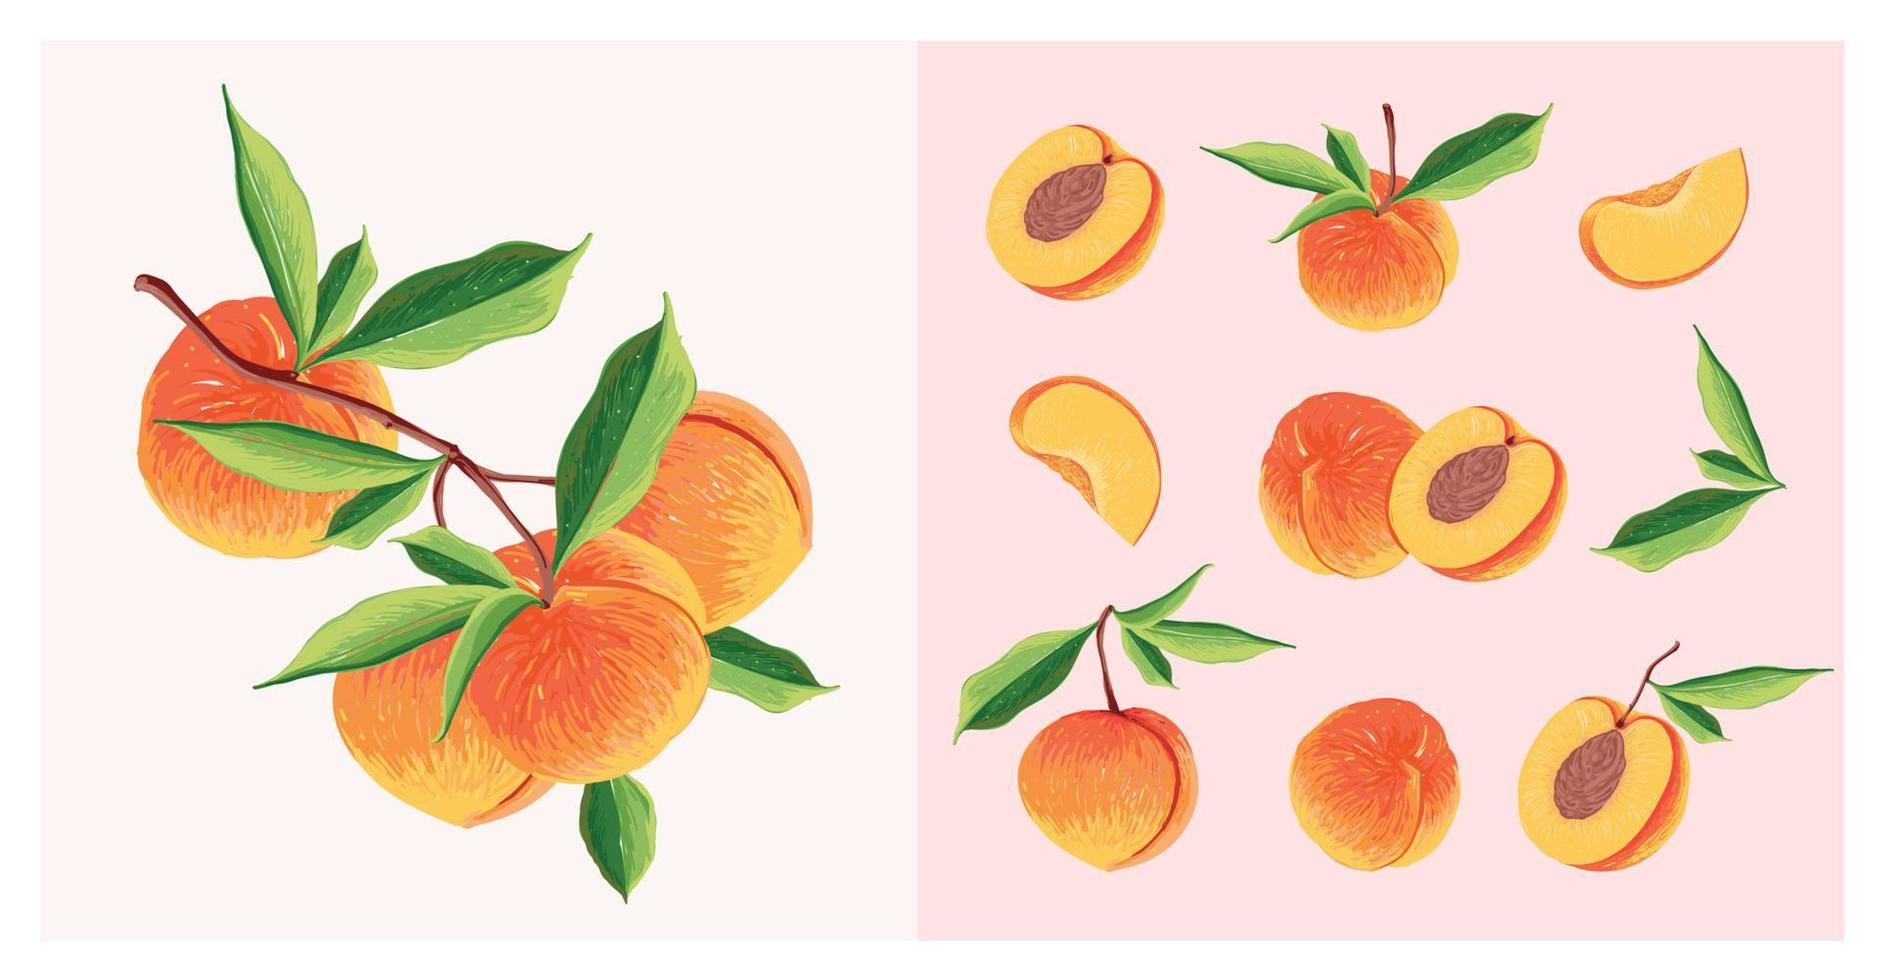 Pfirsich-Fruchtsatz. Botanische Illustration von Pfirsich. halber Pfirsich und Blätter. vektor